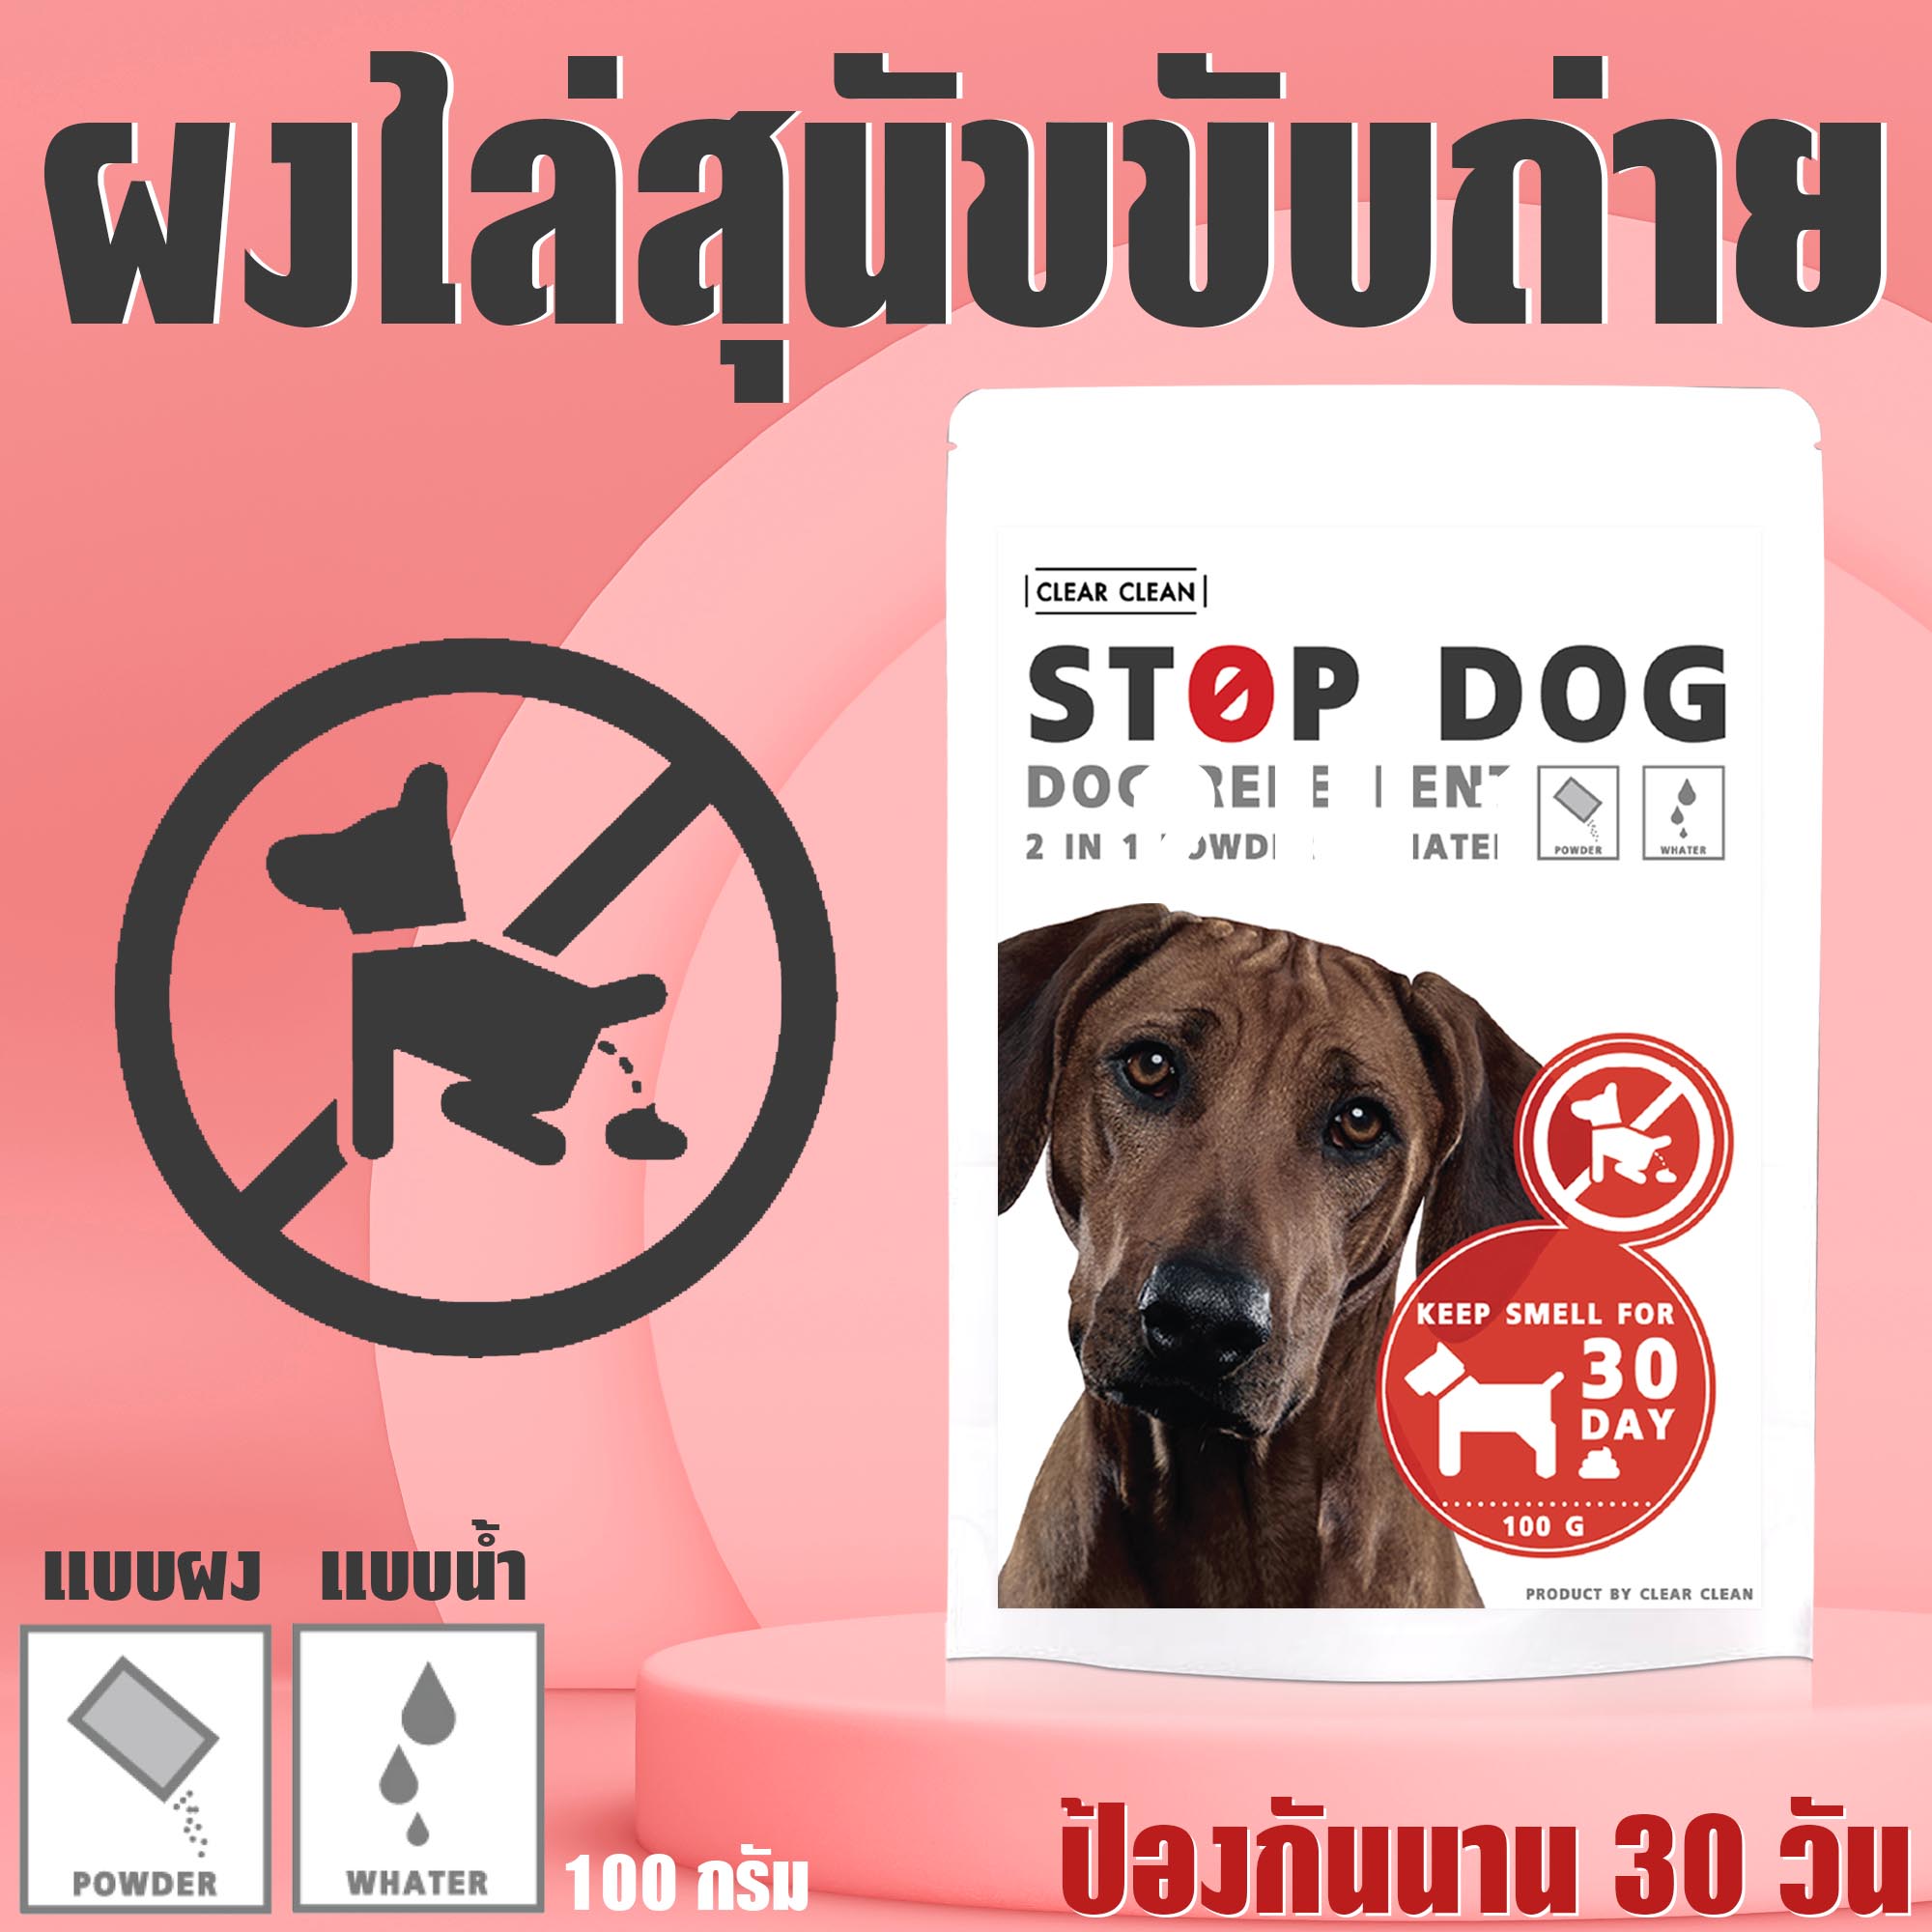 ผงไล่หมา STOP DOG ป้องกันสุนัขขับถ่าย 1 ซอง ไล่หมาขี้ ไล่แมว เพียงโรยบริเวณที่ต้องการ